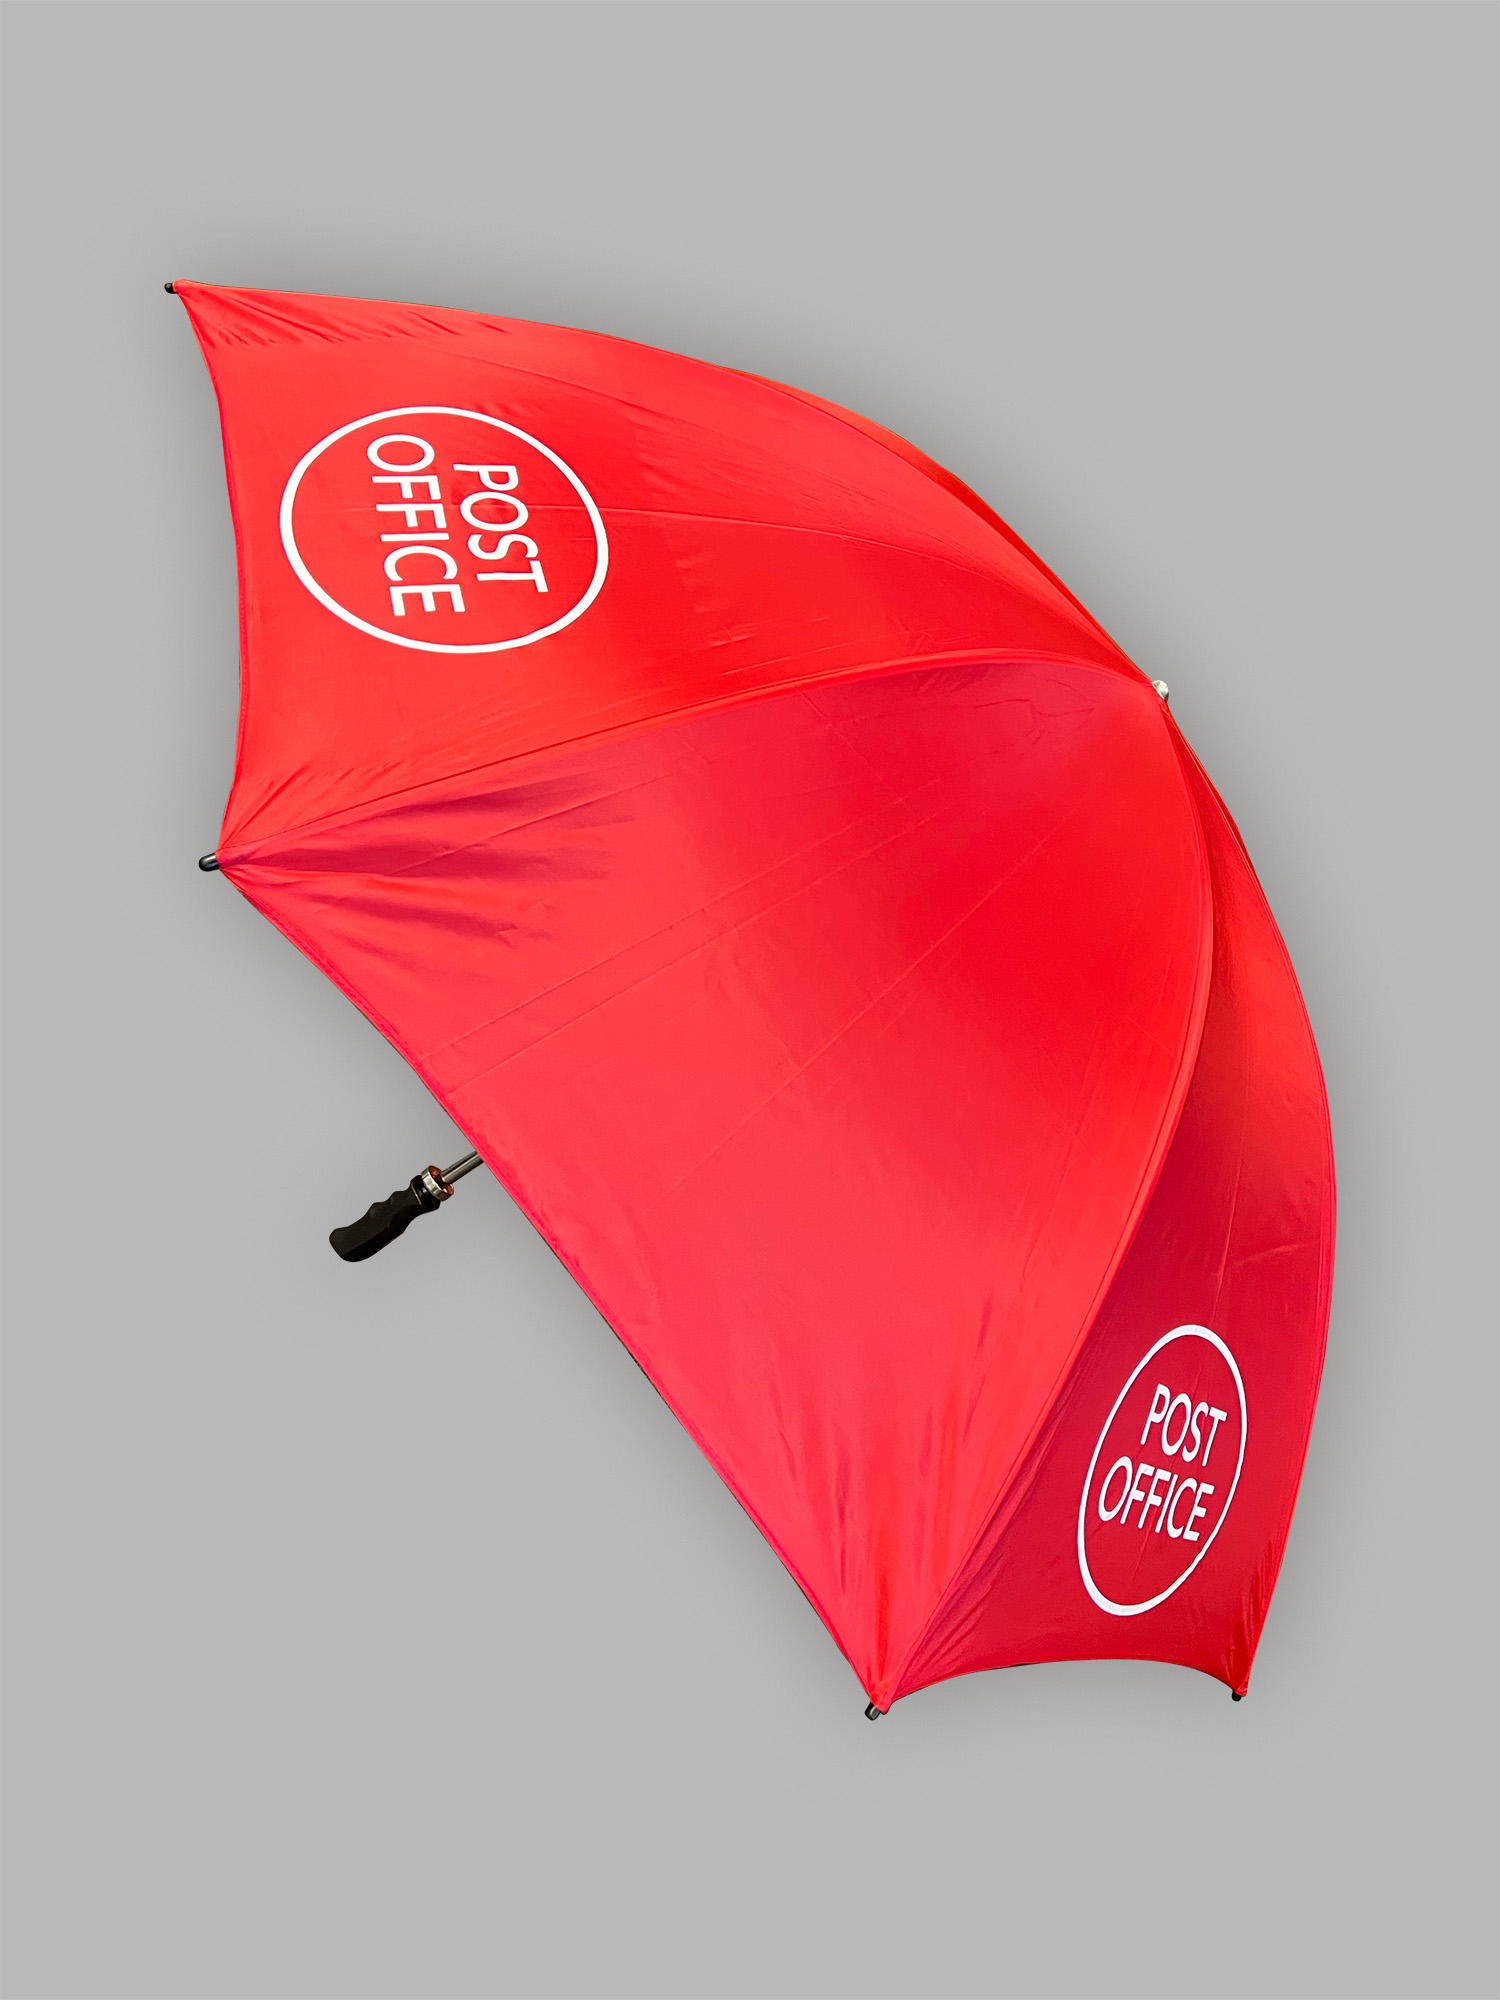 Printed Umbrellas UK